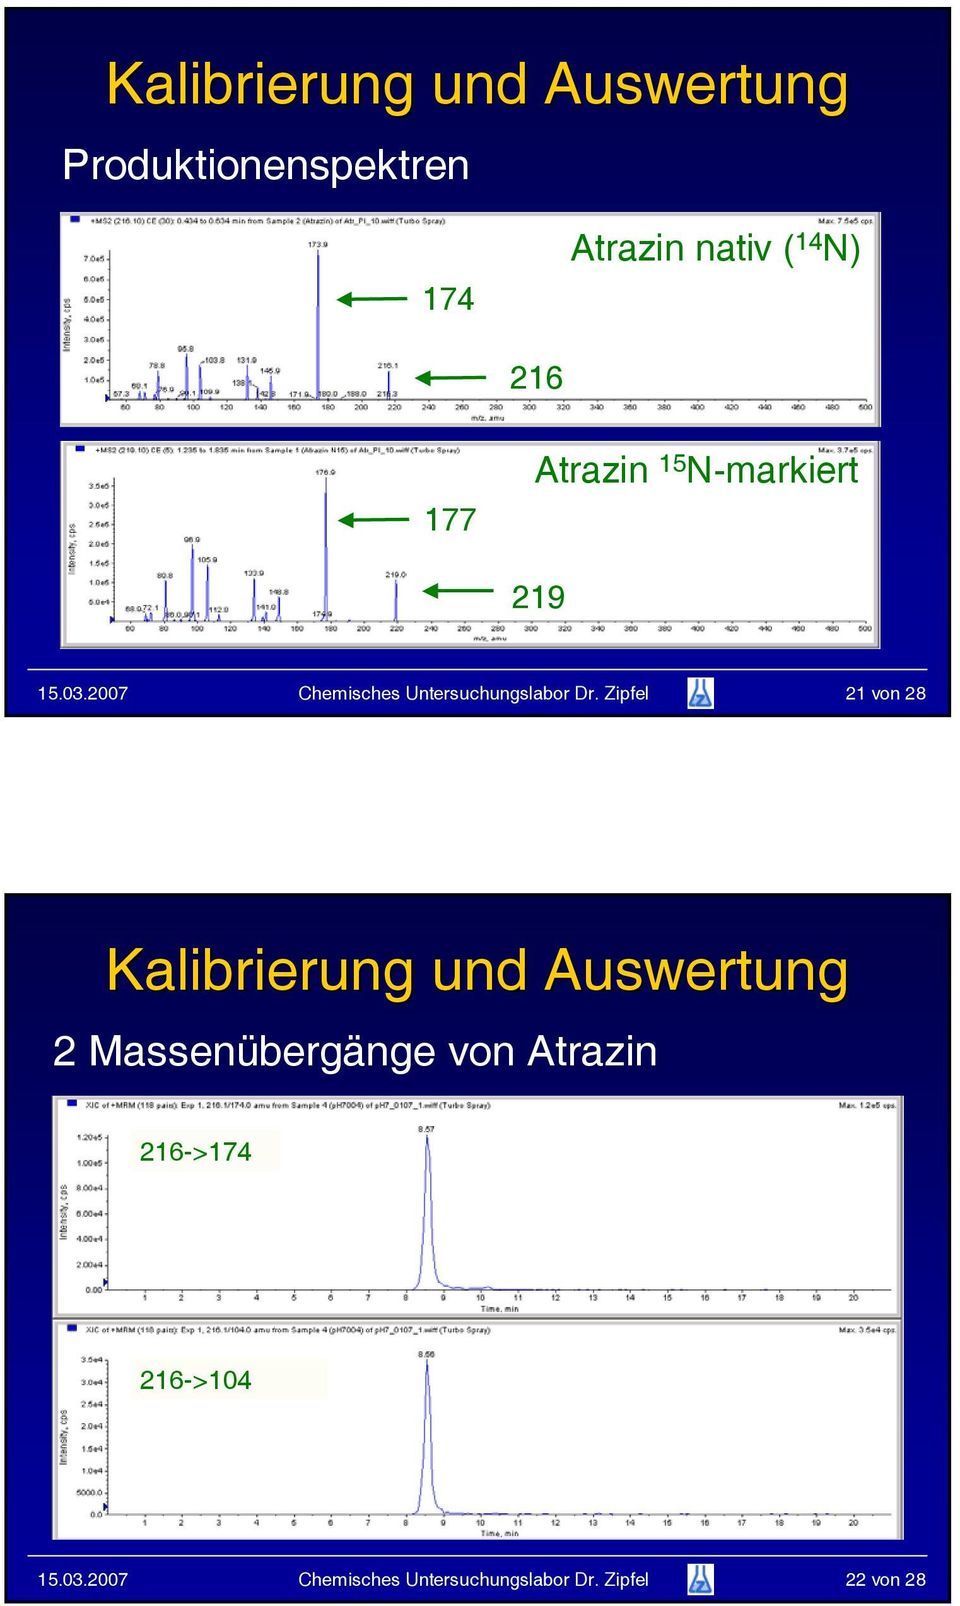 Zipfel 21 von 28 Kalibrierung und Auswertung 2 Massenübergänge von Atrazin